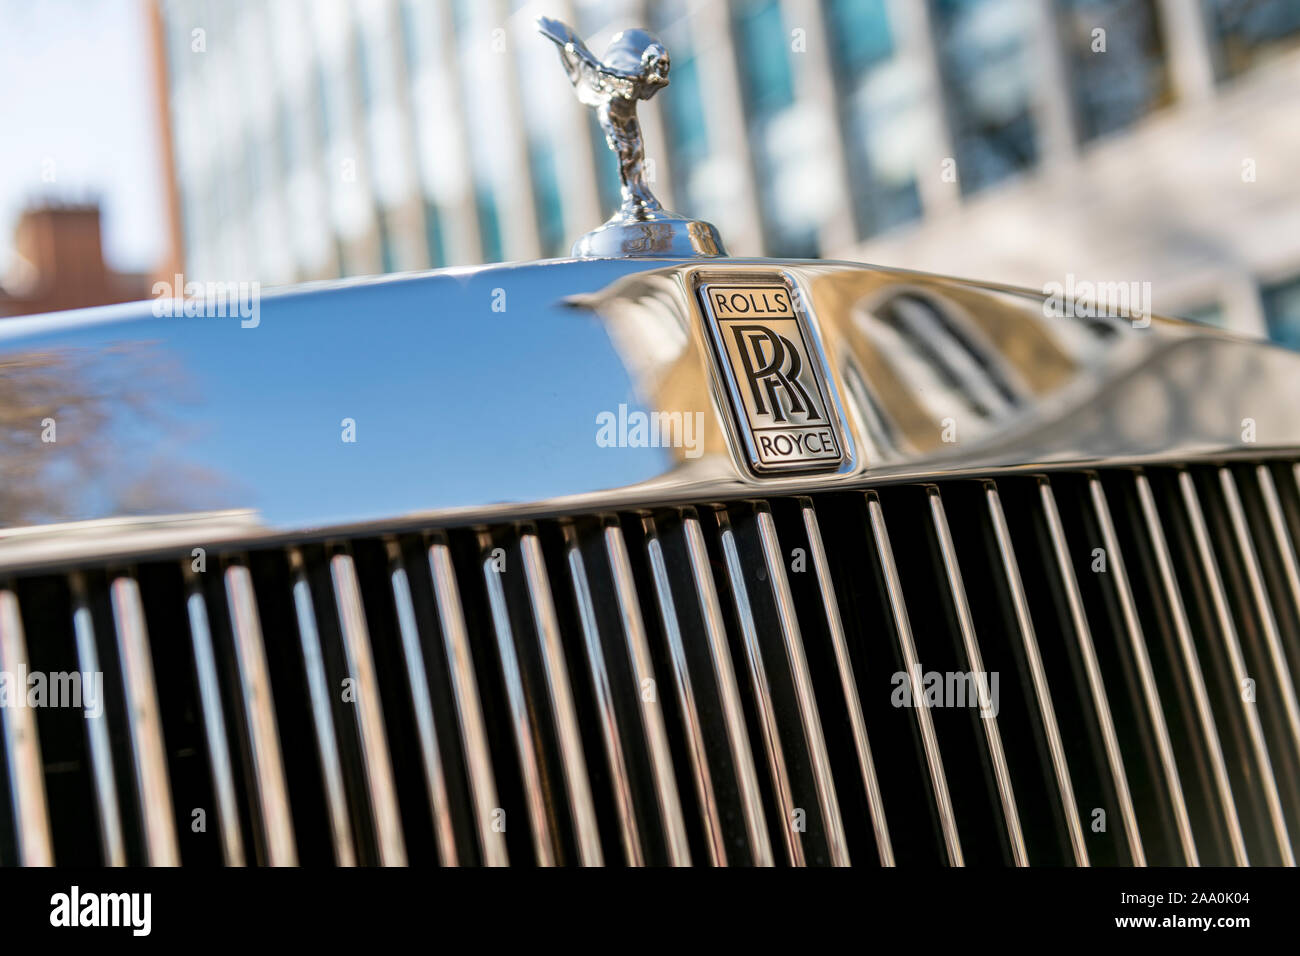 Primer plano de la insignia y parrilla de un coche de lujo Rolls Royce en el oeste de Londres Foto de stock